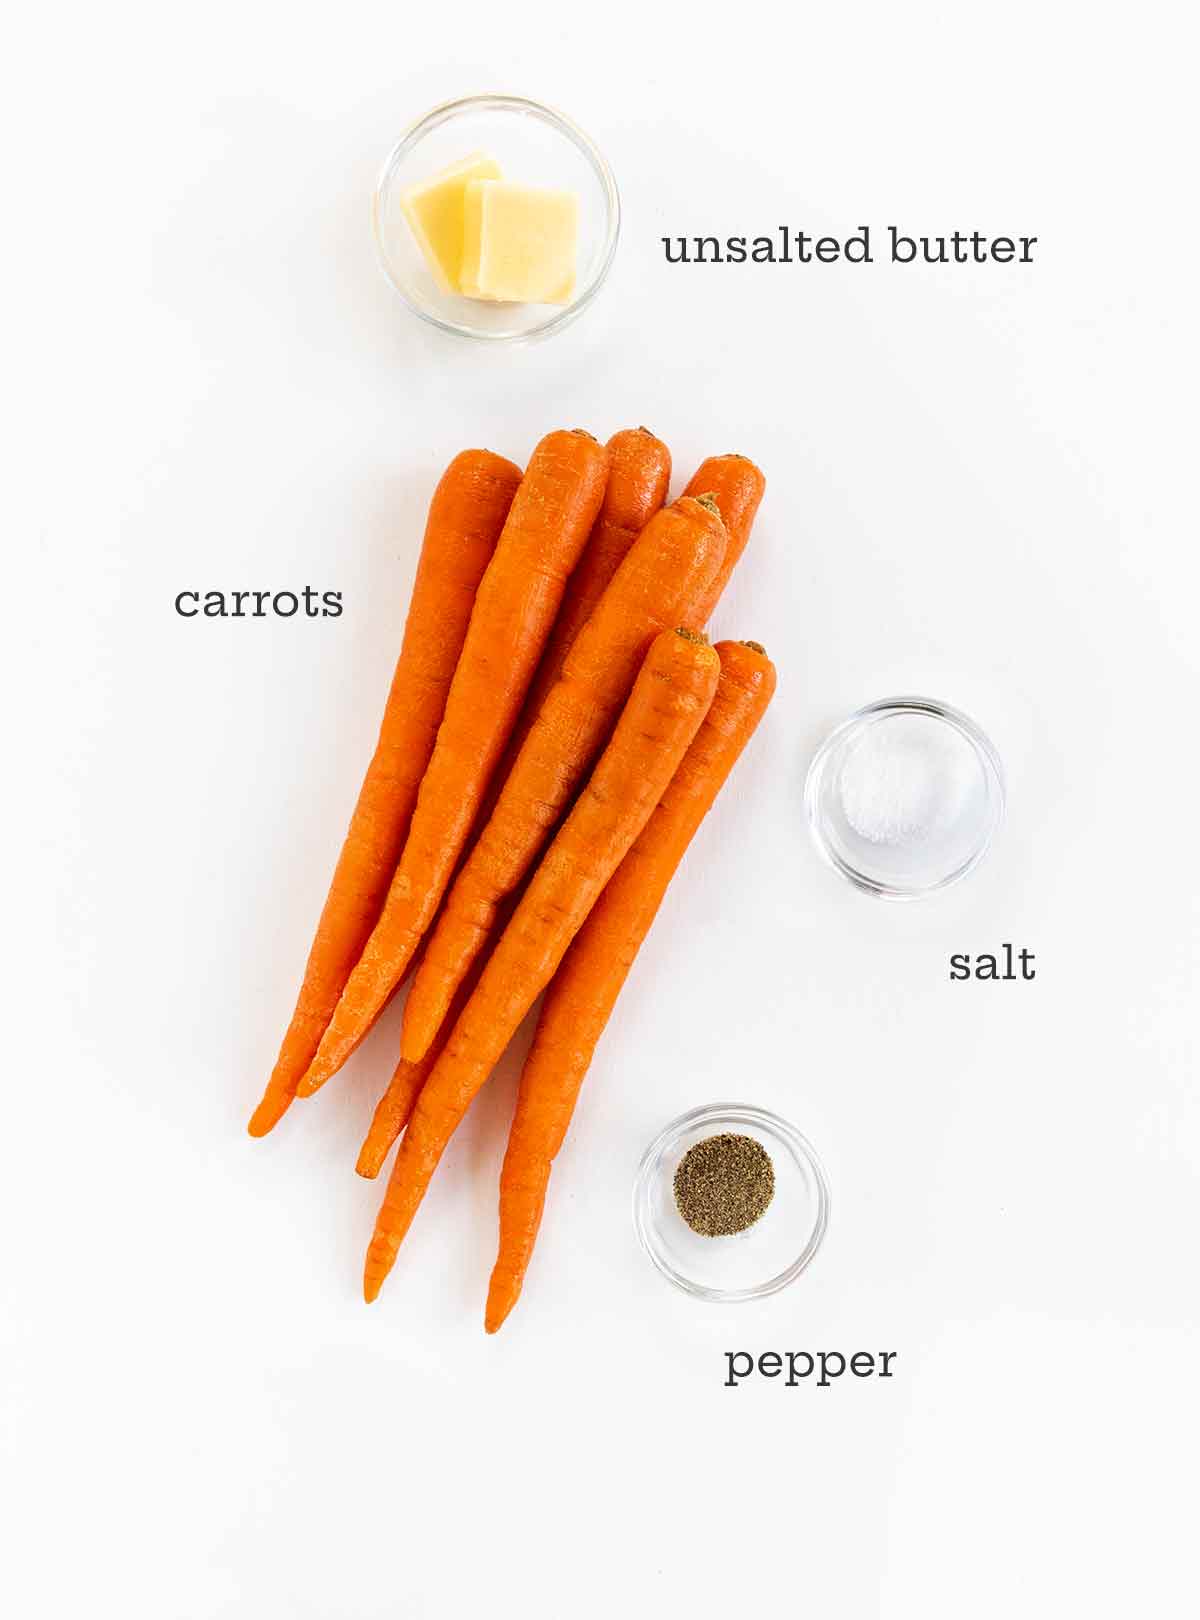 Ingredienser för rostade morötter - morötter, smör, salt och peppar.